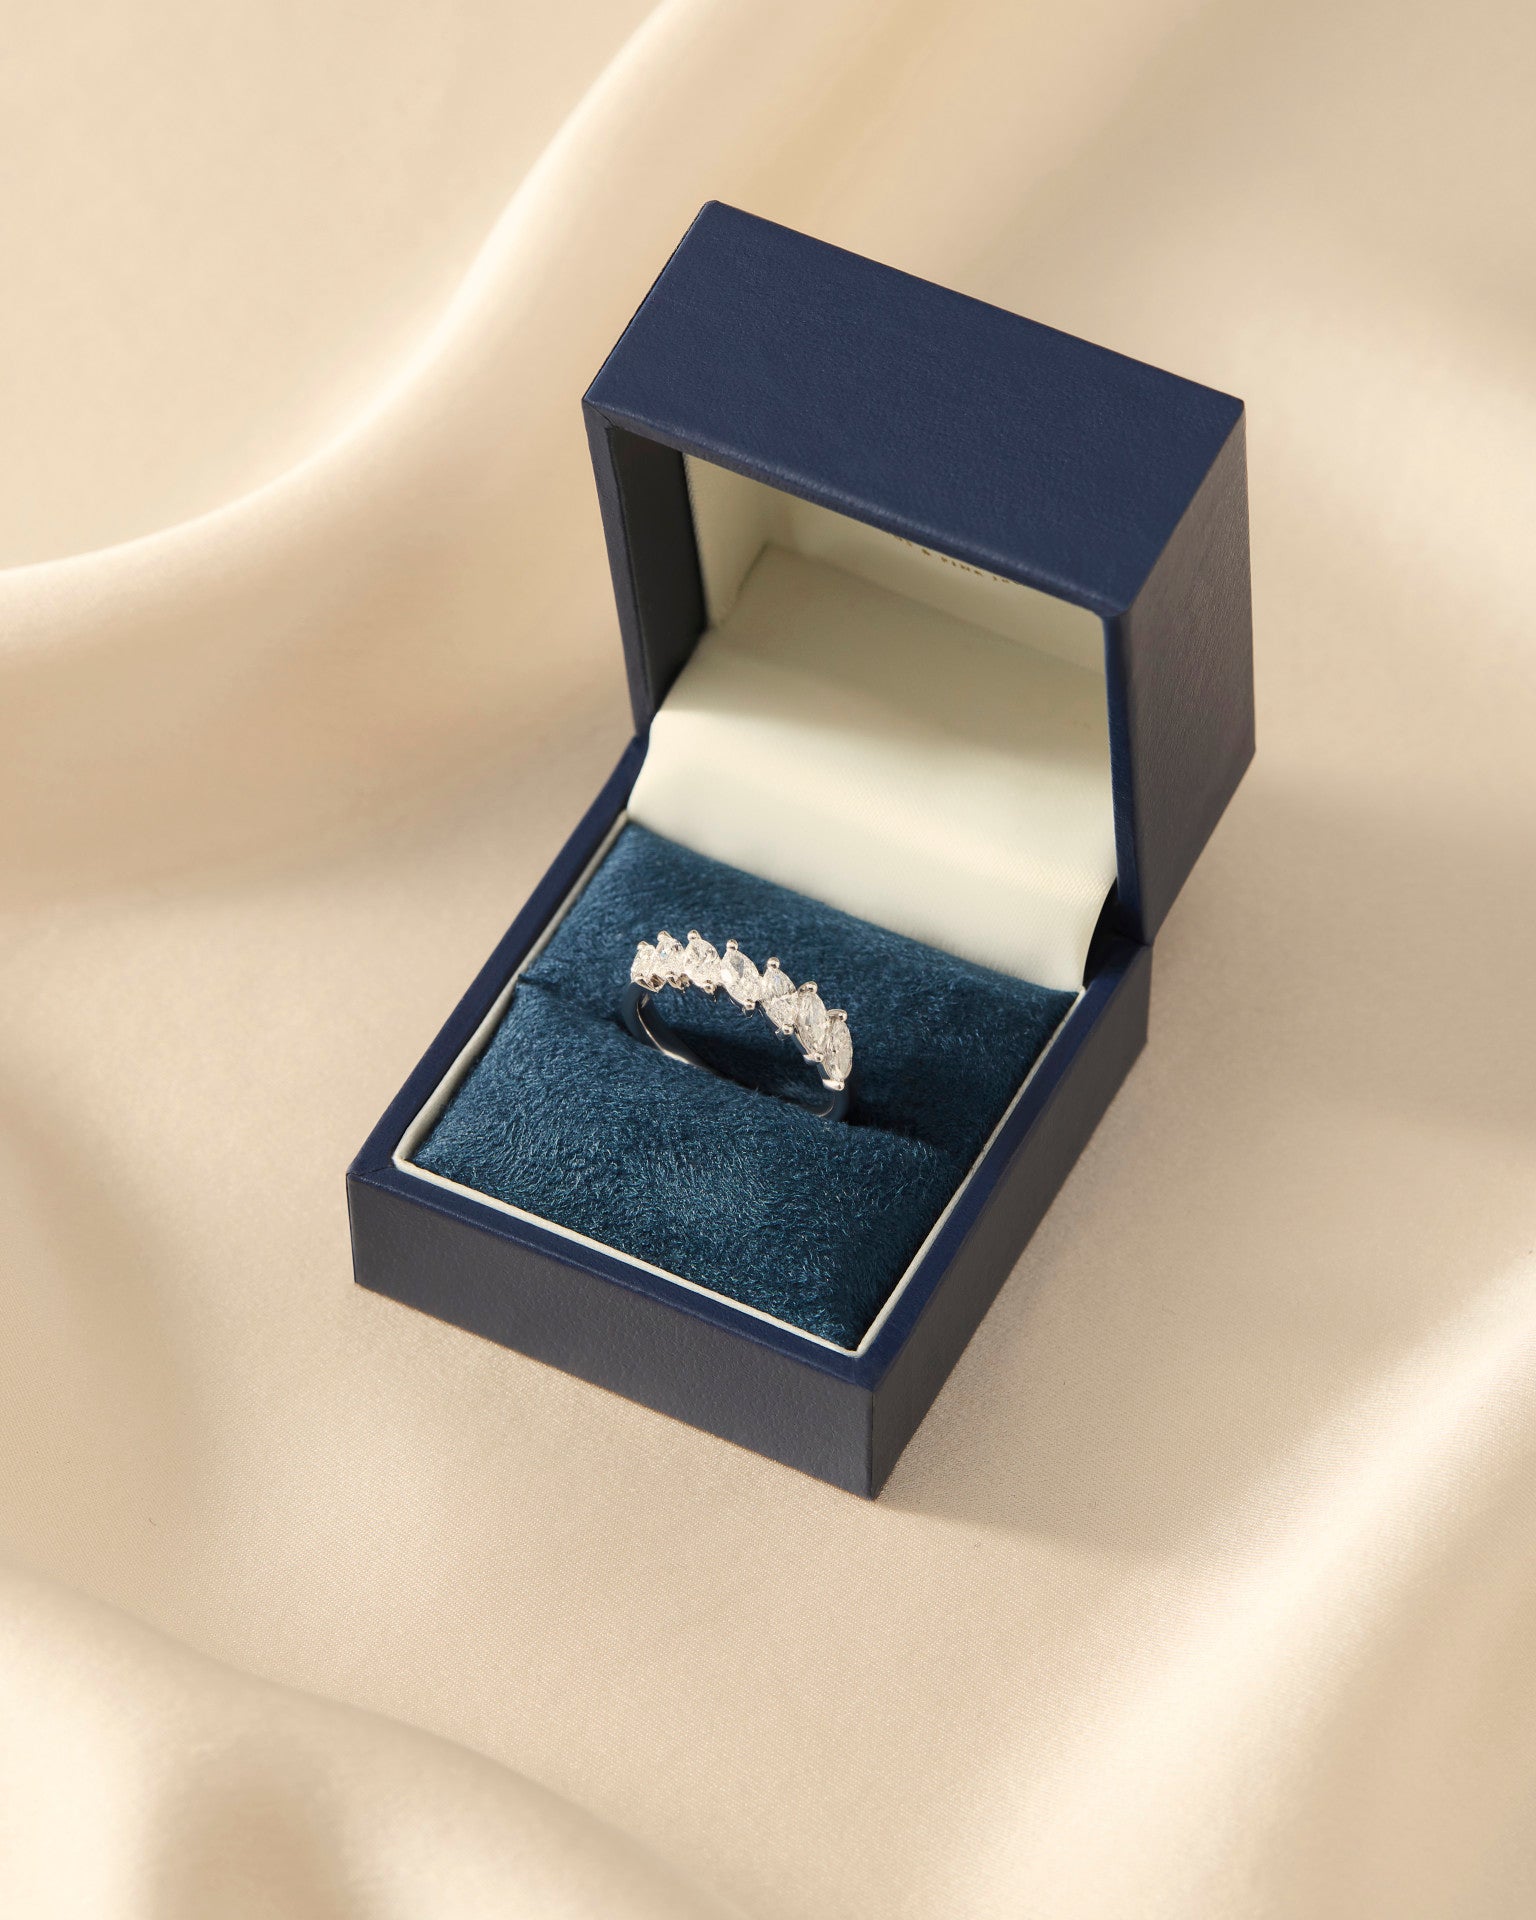 Freya | 11 Stone Slanted Marquise Diamond Ring